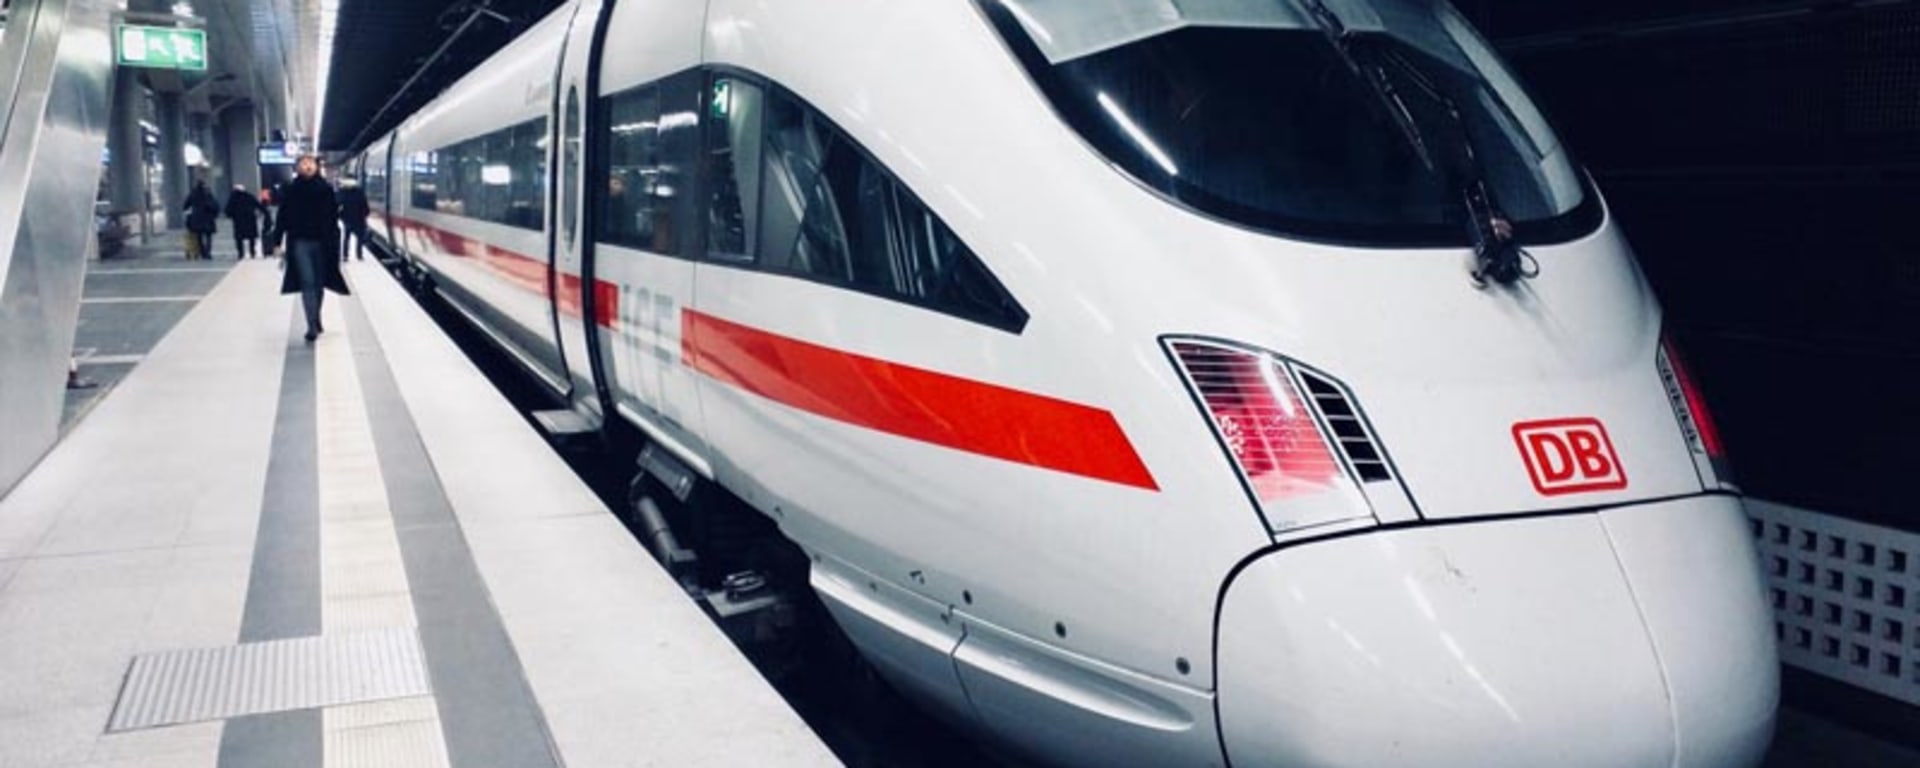 Un treno veloce bianco e rosso parcheggiato in una stazione, pronto a trasportare i passeggeri a destinazione.